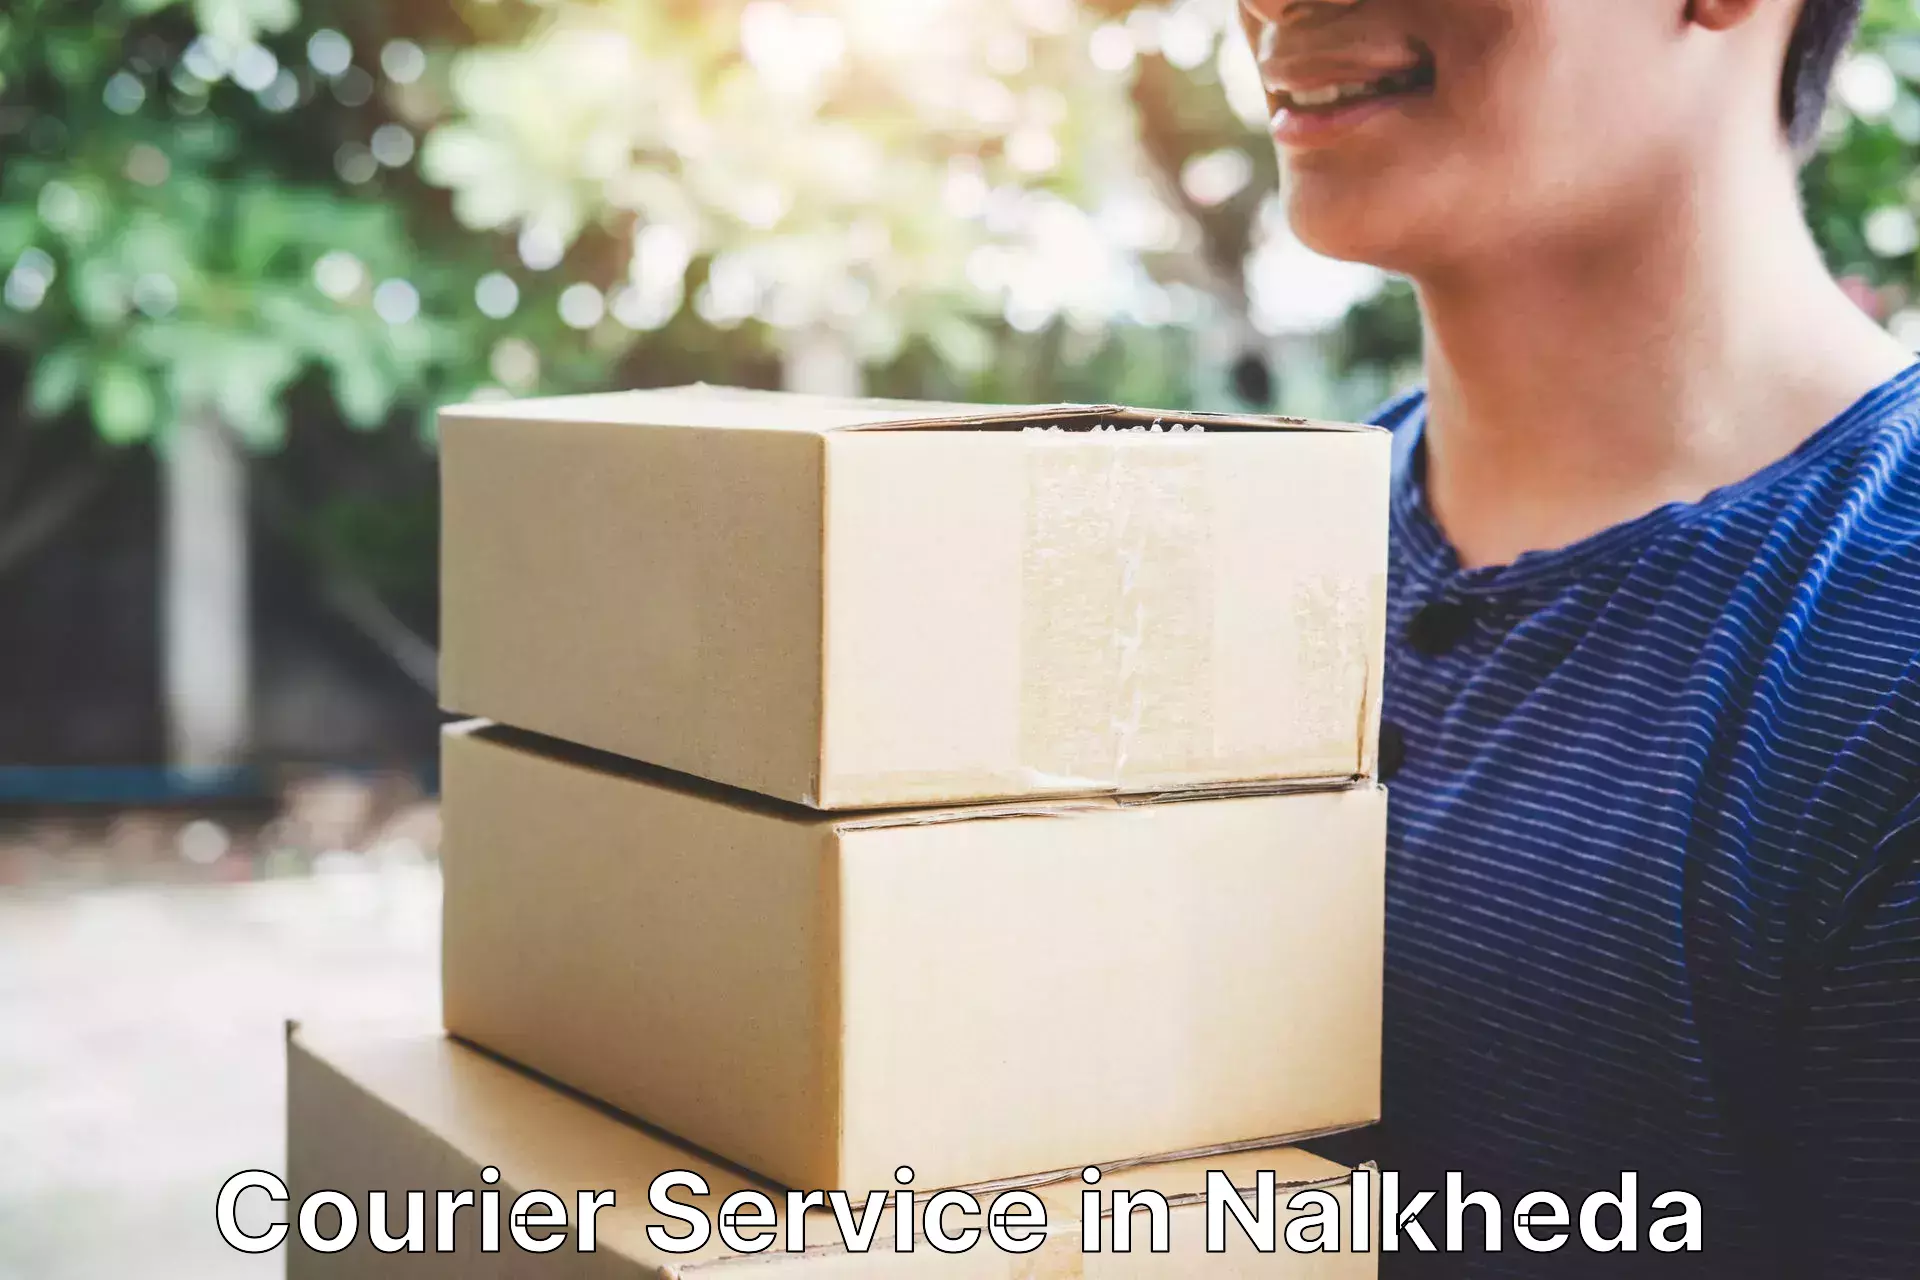 Efficient parcel service in Nalkheda